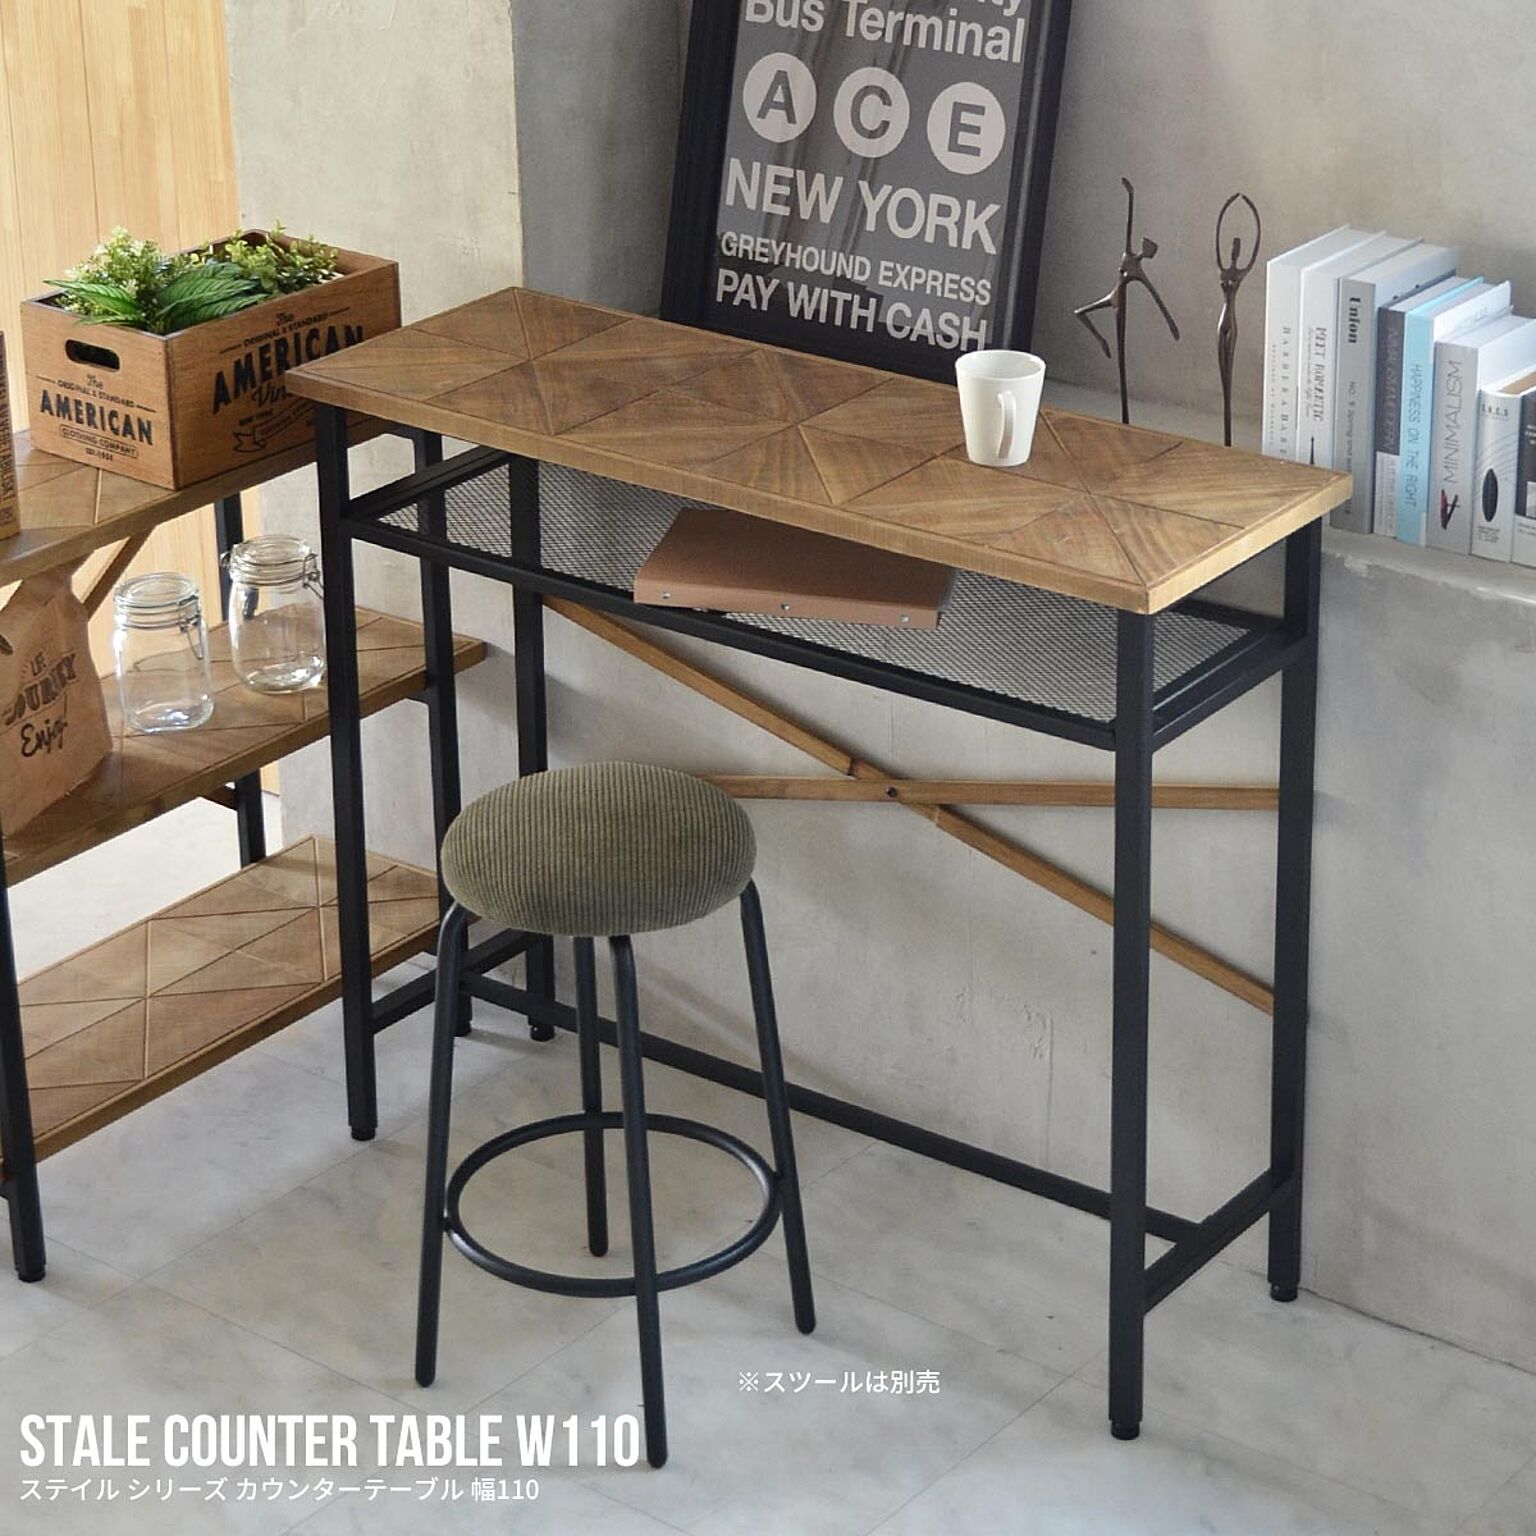 カウンターテーブル STALE ステイル 幅110cm テレワーク 在宅勤務 ※単品販売  カウンターテーブル バーテーブル テーブル アイアン リビング カウンター カフェ テーブル